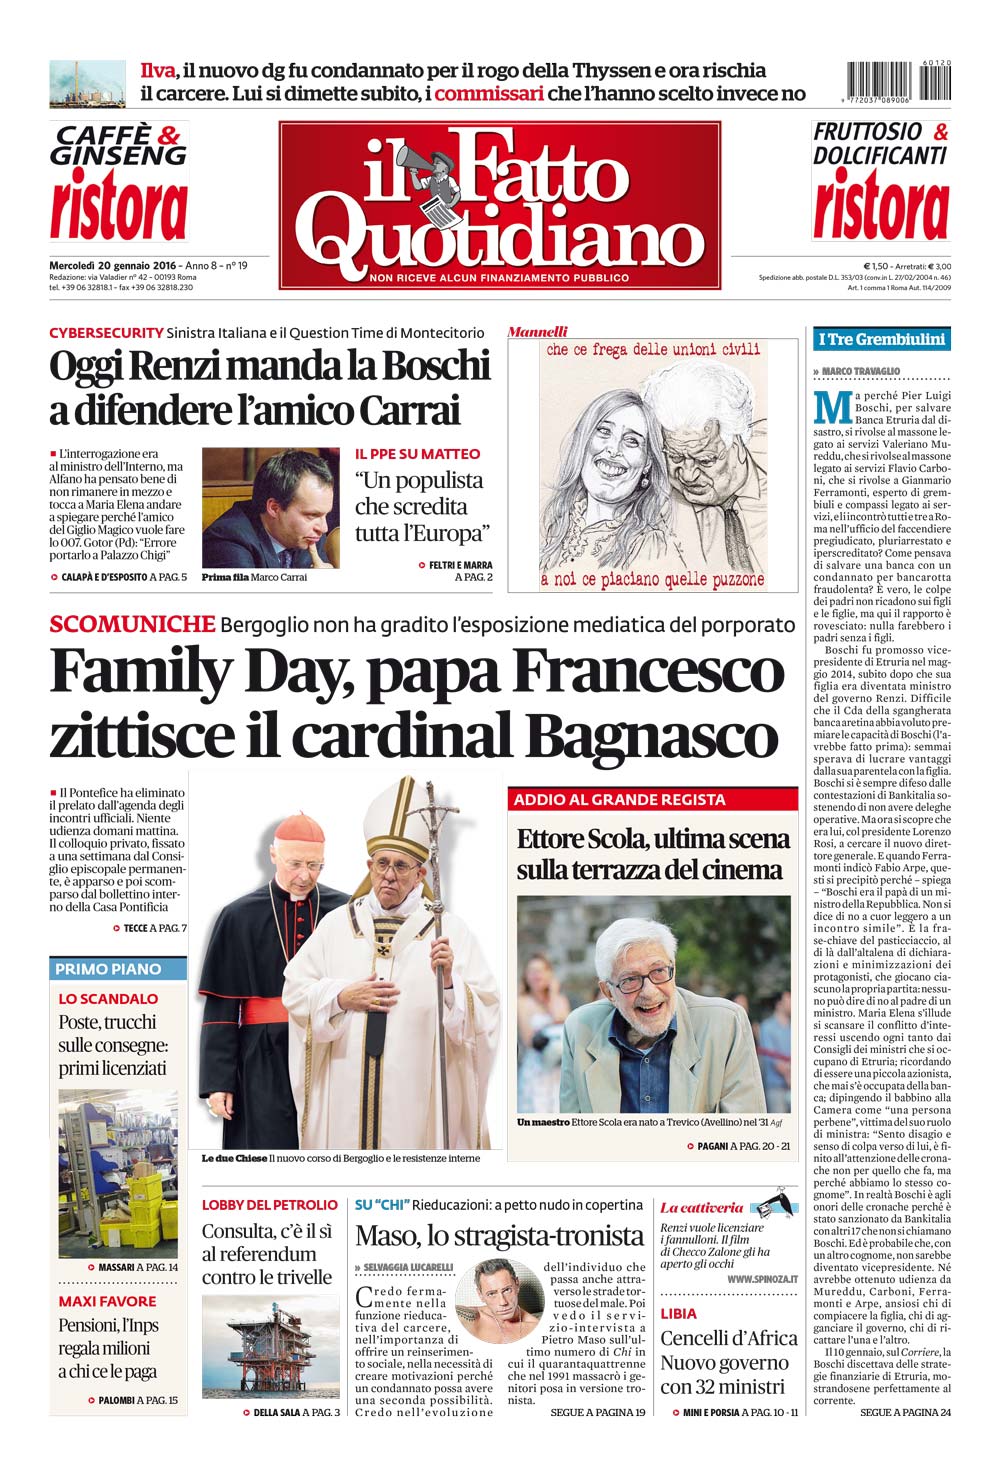 Prima Pagina Il Fatto Quotidiano - Family Day, papa Francesco zittisce il cardinal Bagnasco